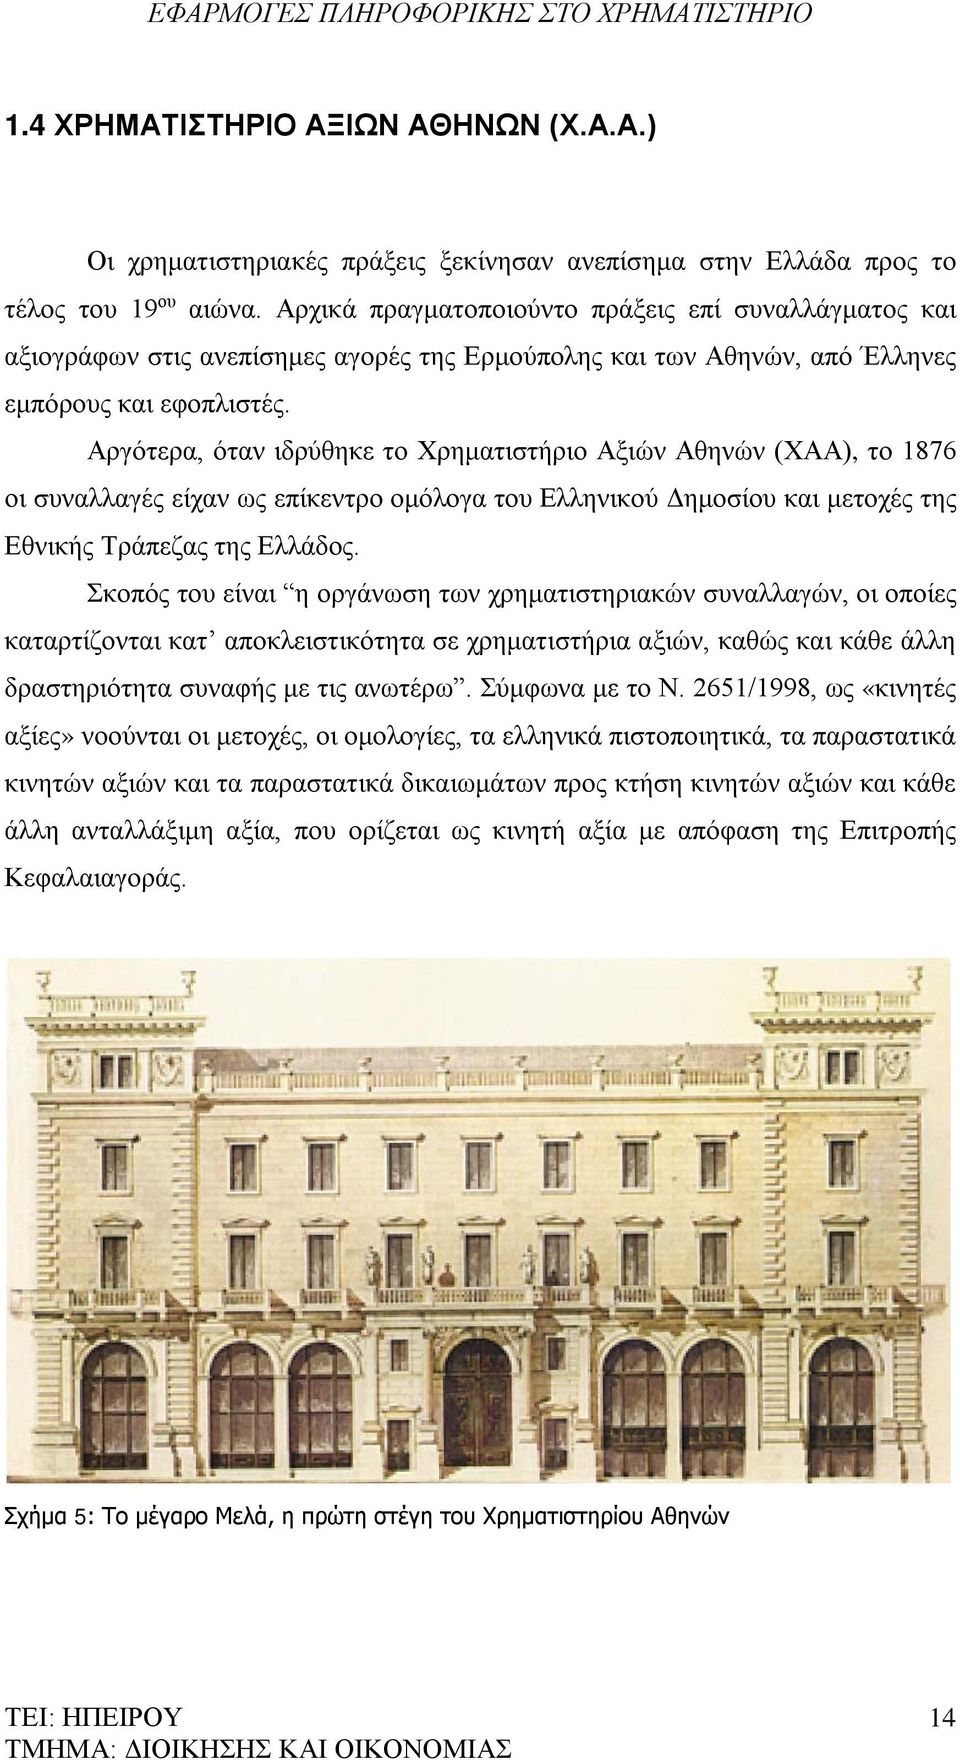 Αργότερα, όταν ιδρύθηκε το Χρηματιστήριο Αξιών Αθηνών (ΧΑΑ), το 1876 οι συναλλαγές είχαν ως επίκεντρο ομόλογα του Ελληνικού Δημοσίου και μετοχές της Εθνικής Τράπεζας της Ελλάδος.